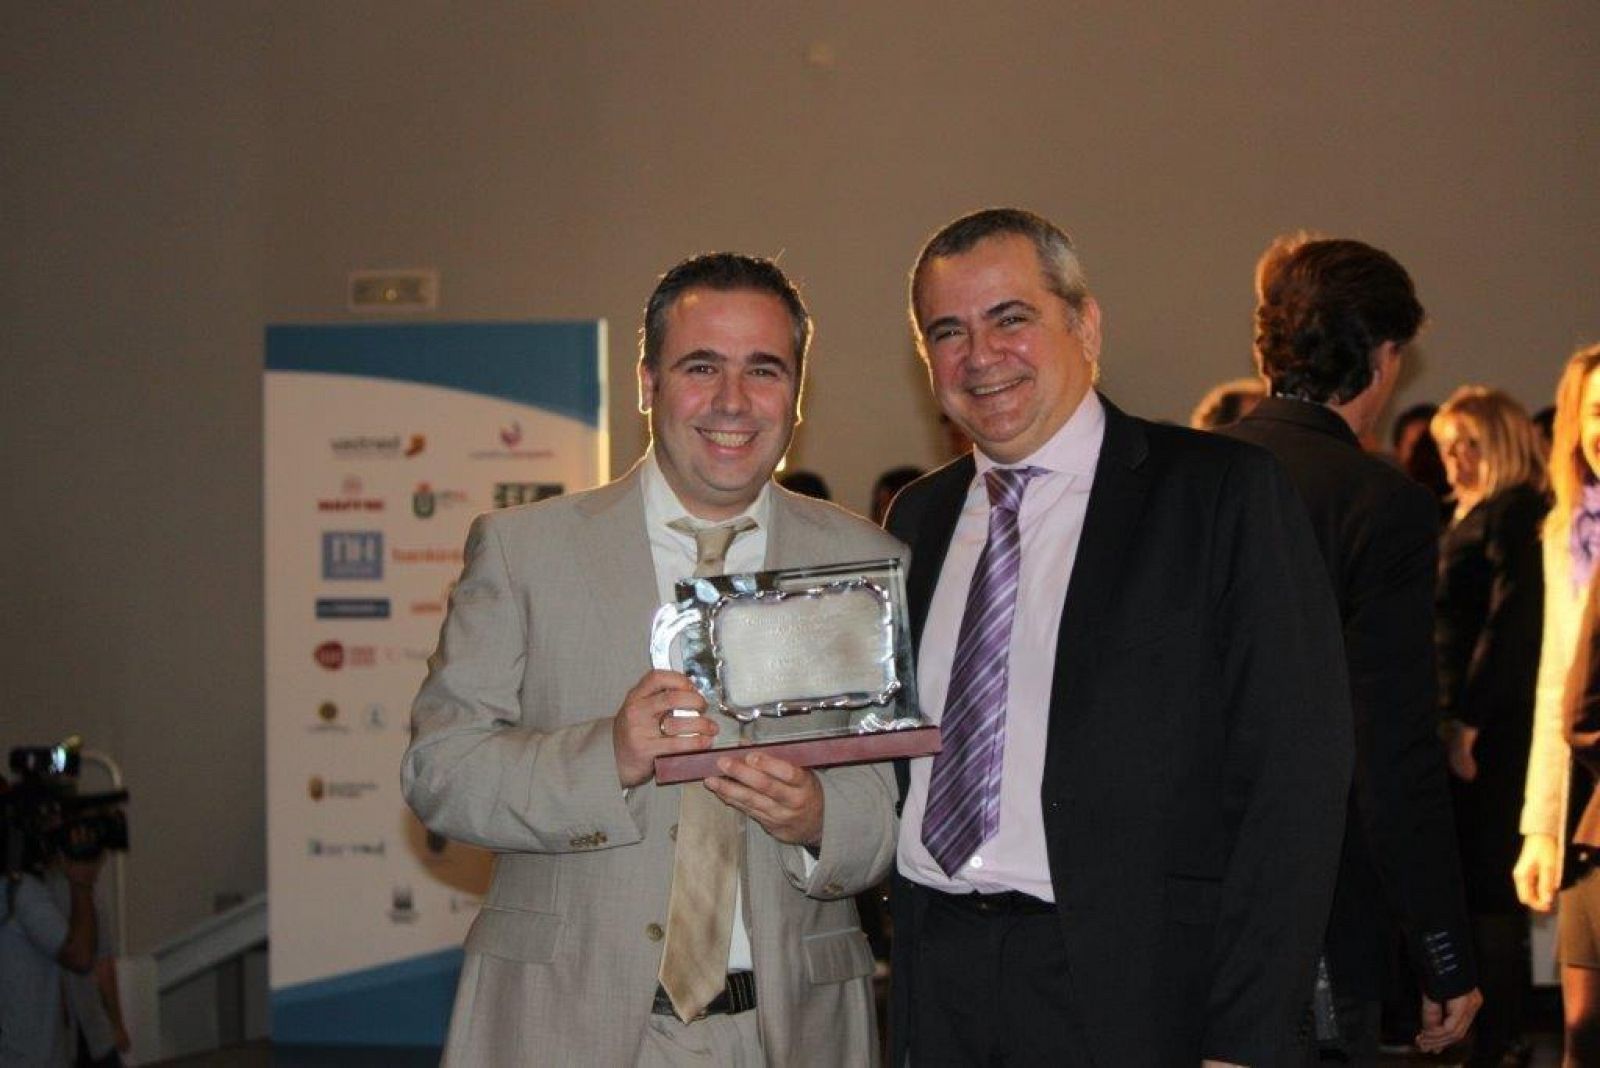 Premio Lánzate 2014